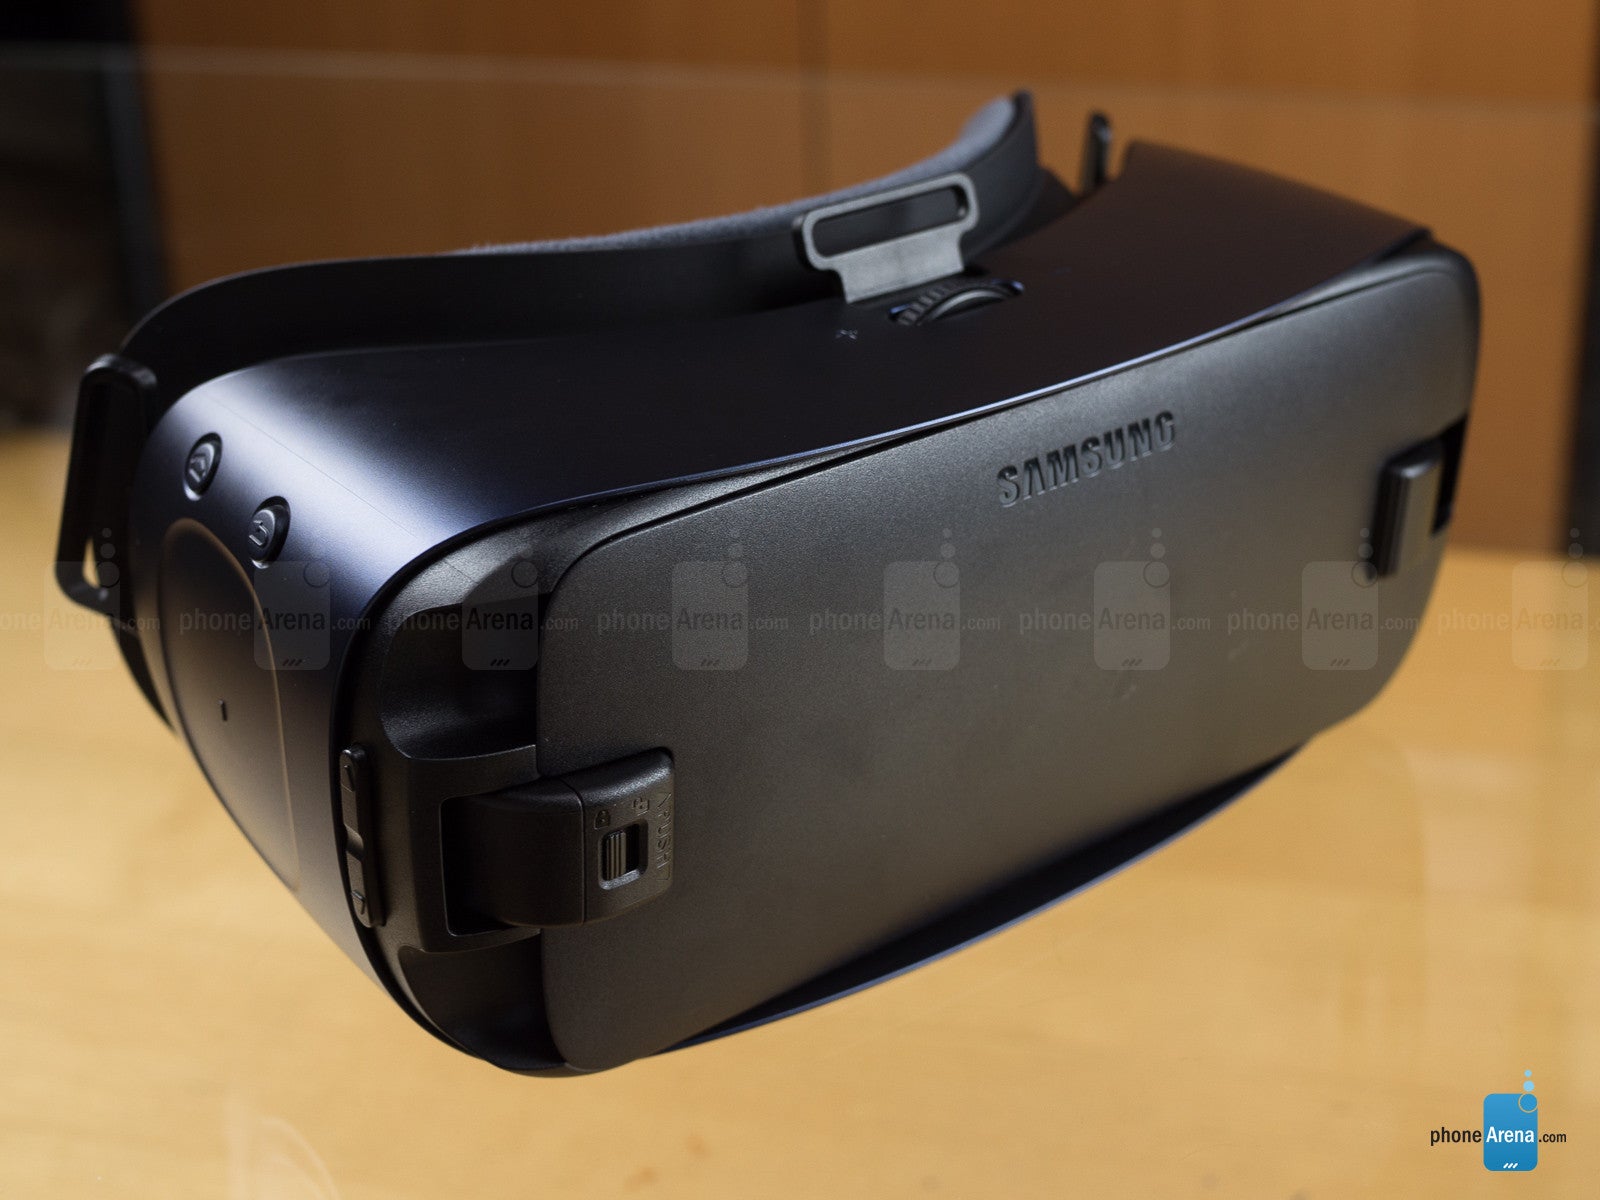 klodset Møde aflevere Samsung Gear VR 2016 Review - PhoneArena